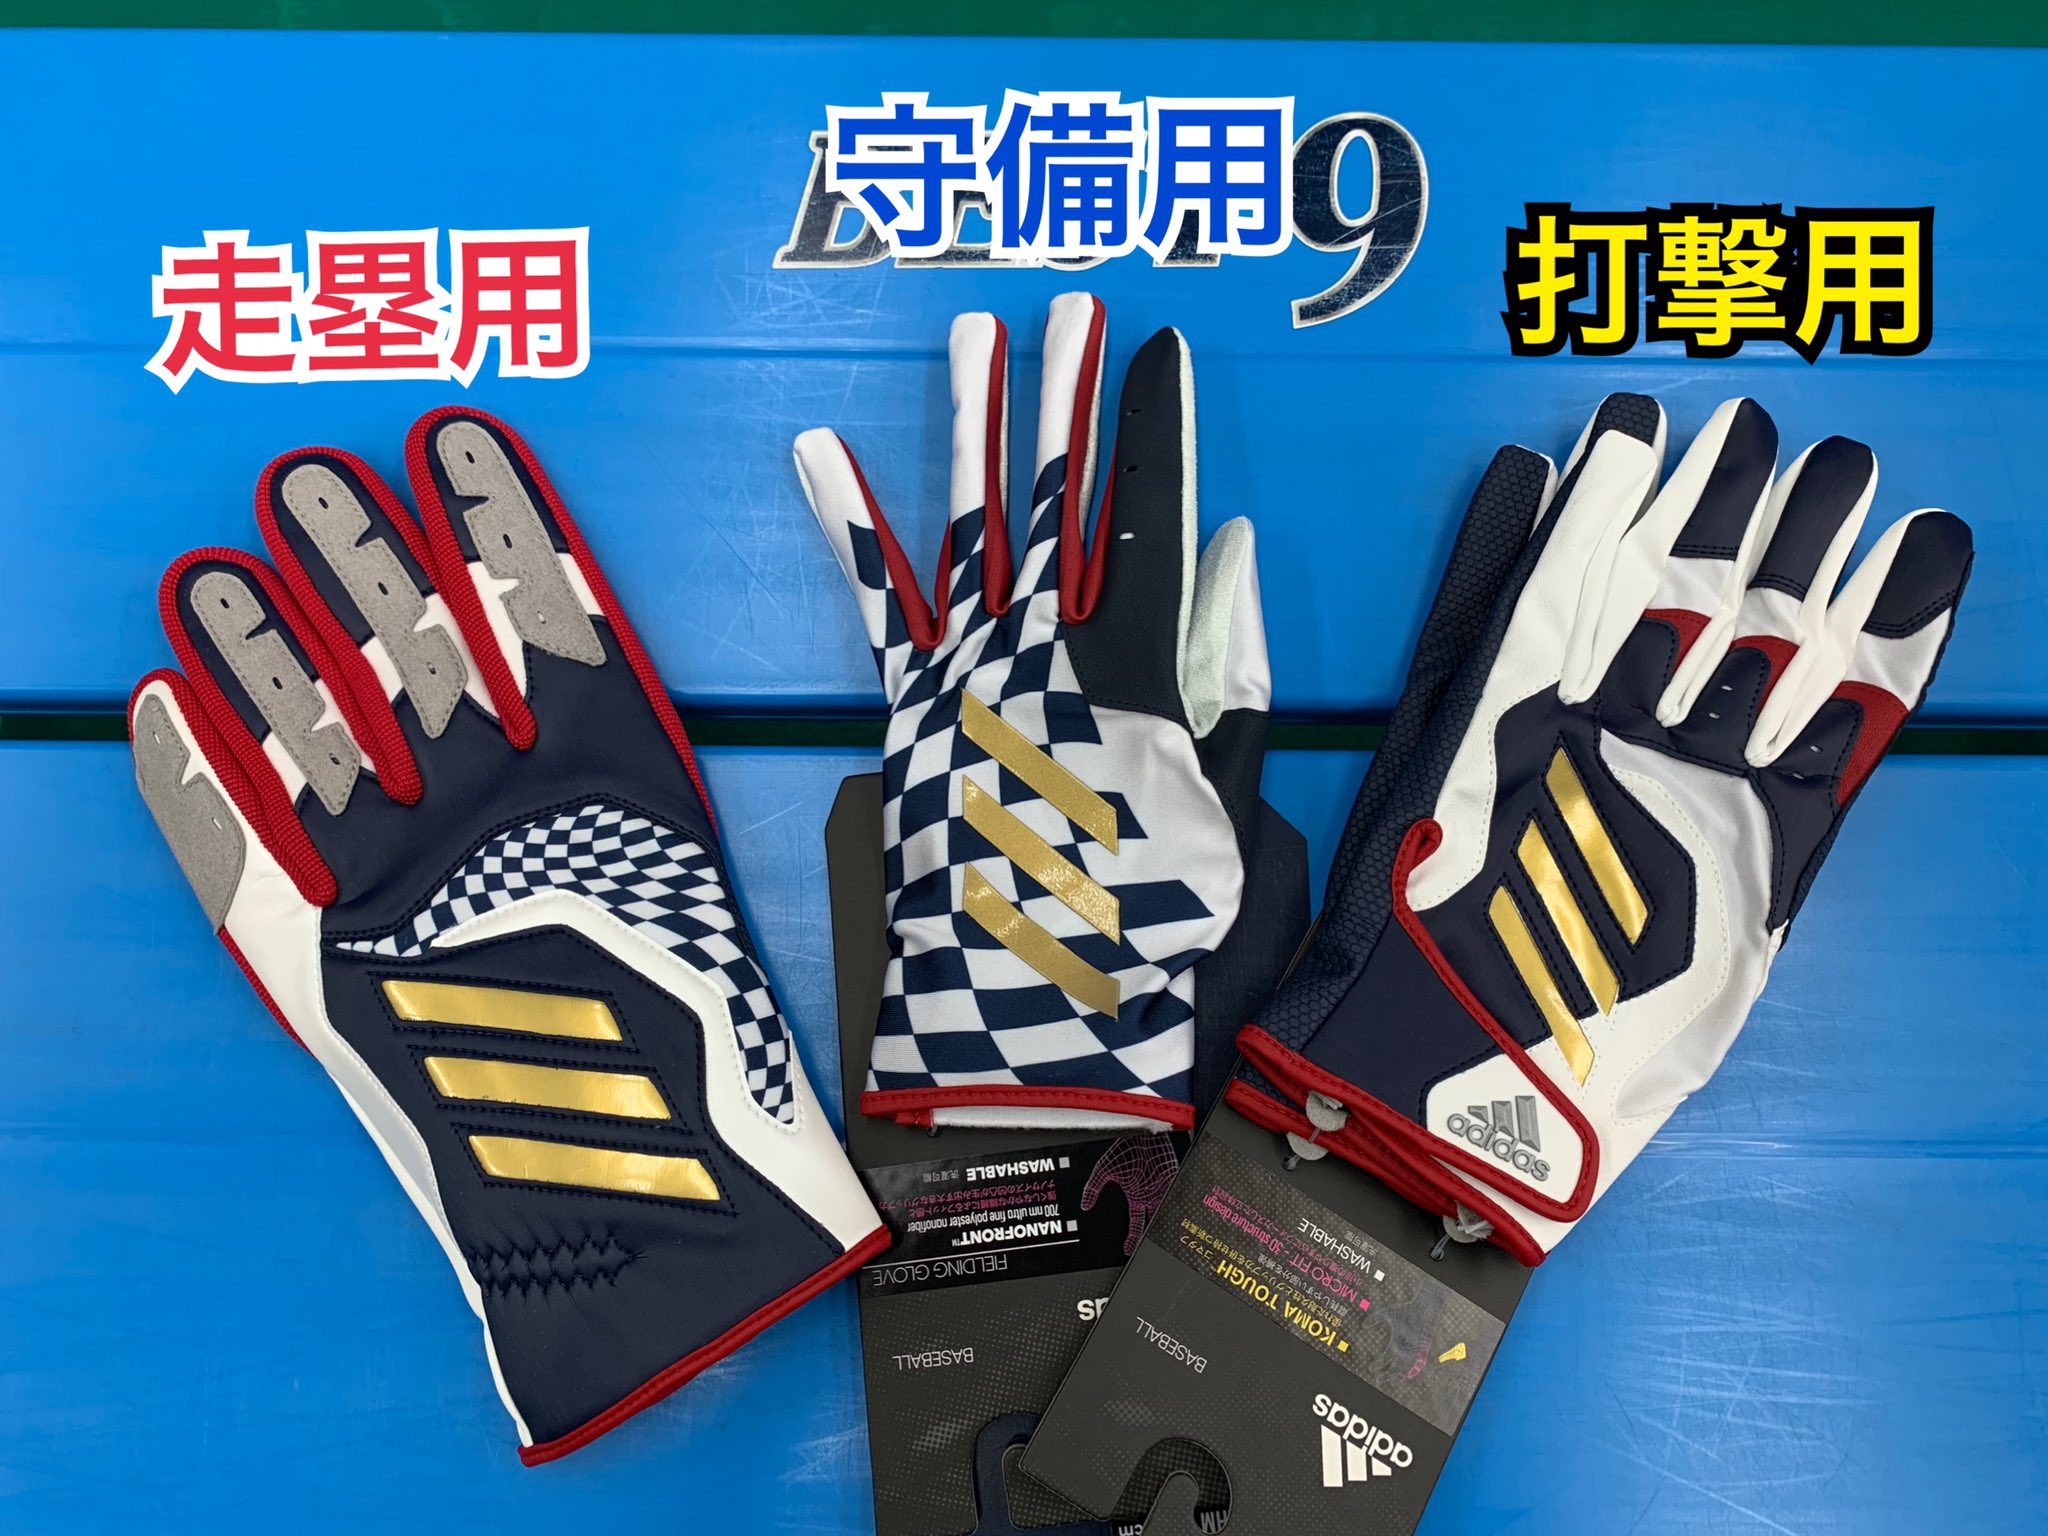 半額品 limited SLIDING gloves 走塁用手袋 L brothersofothers.com